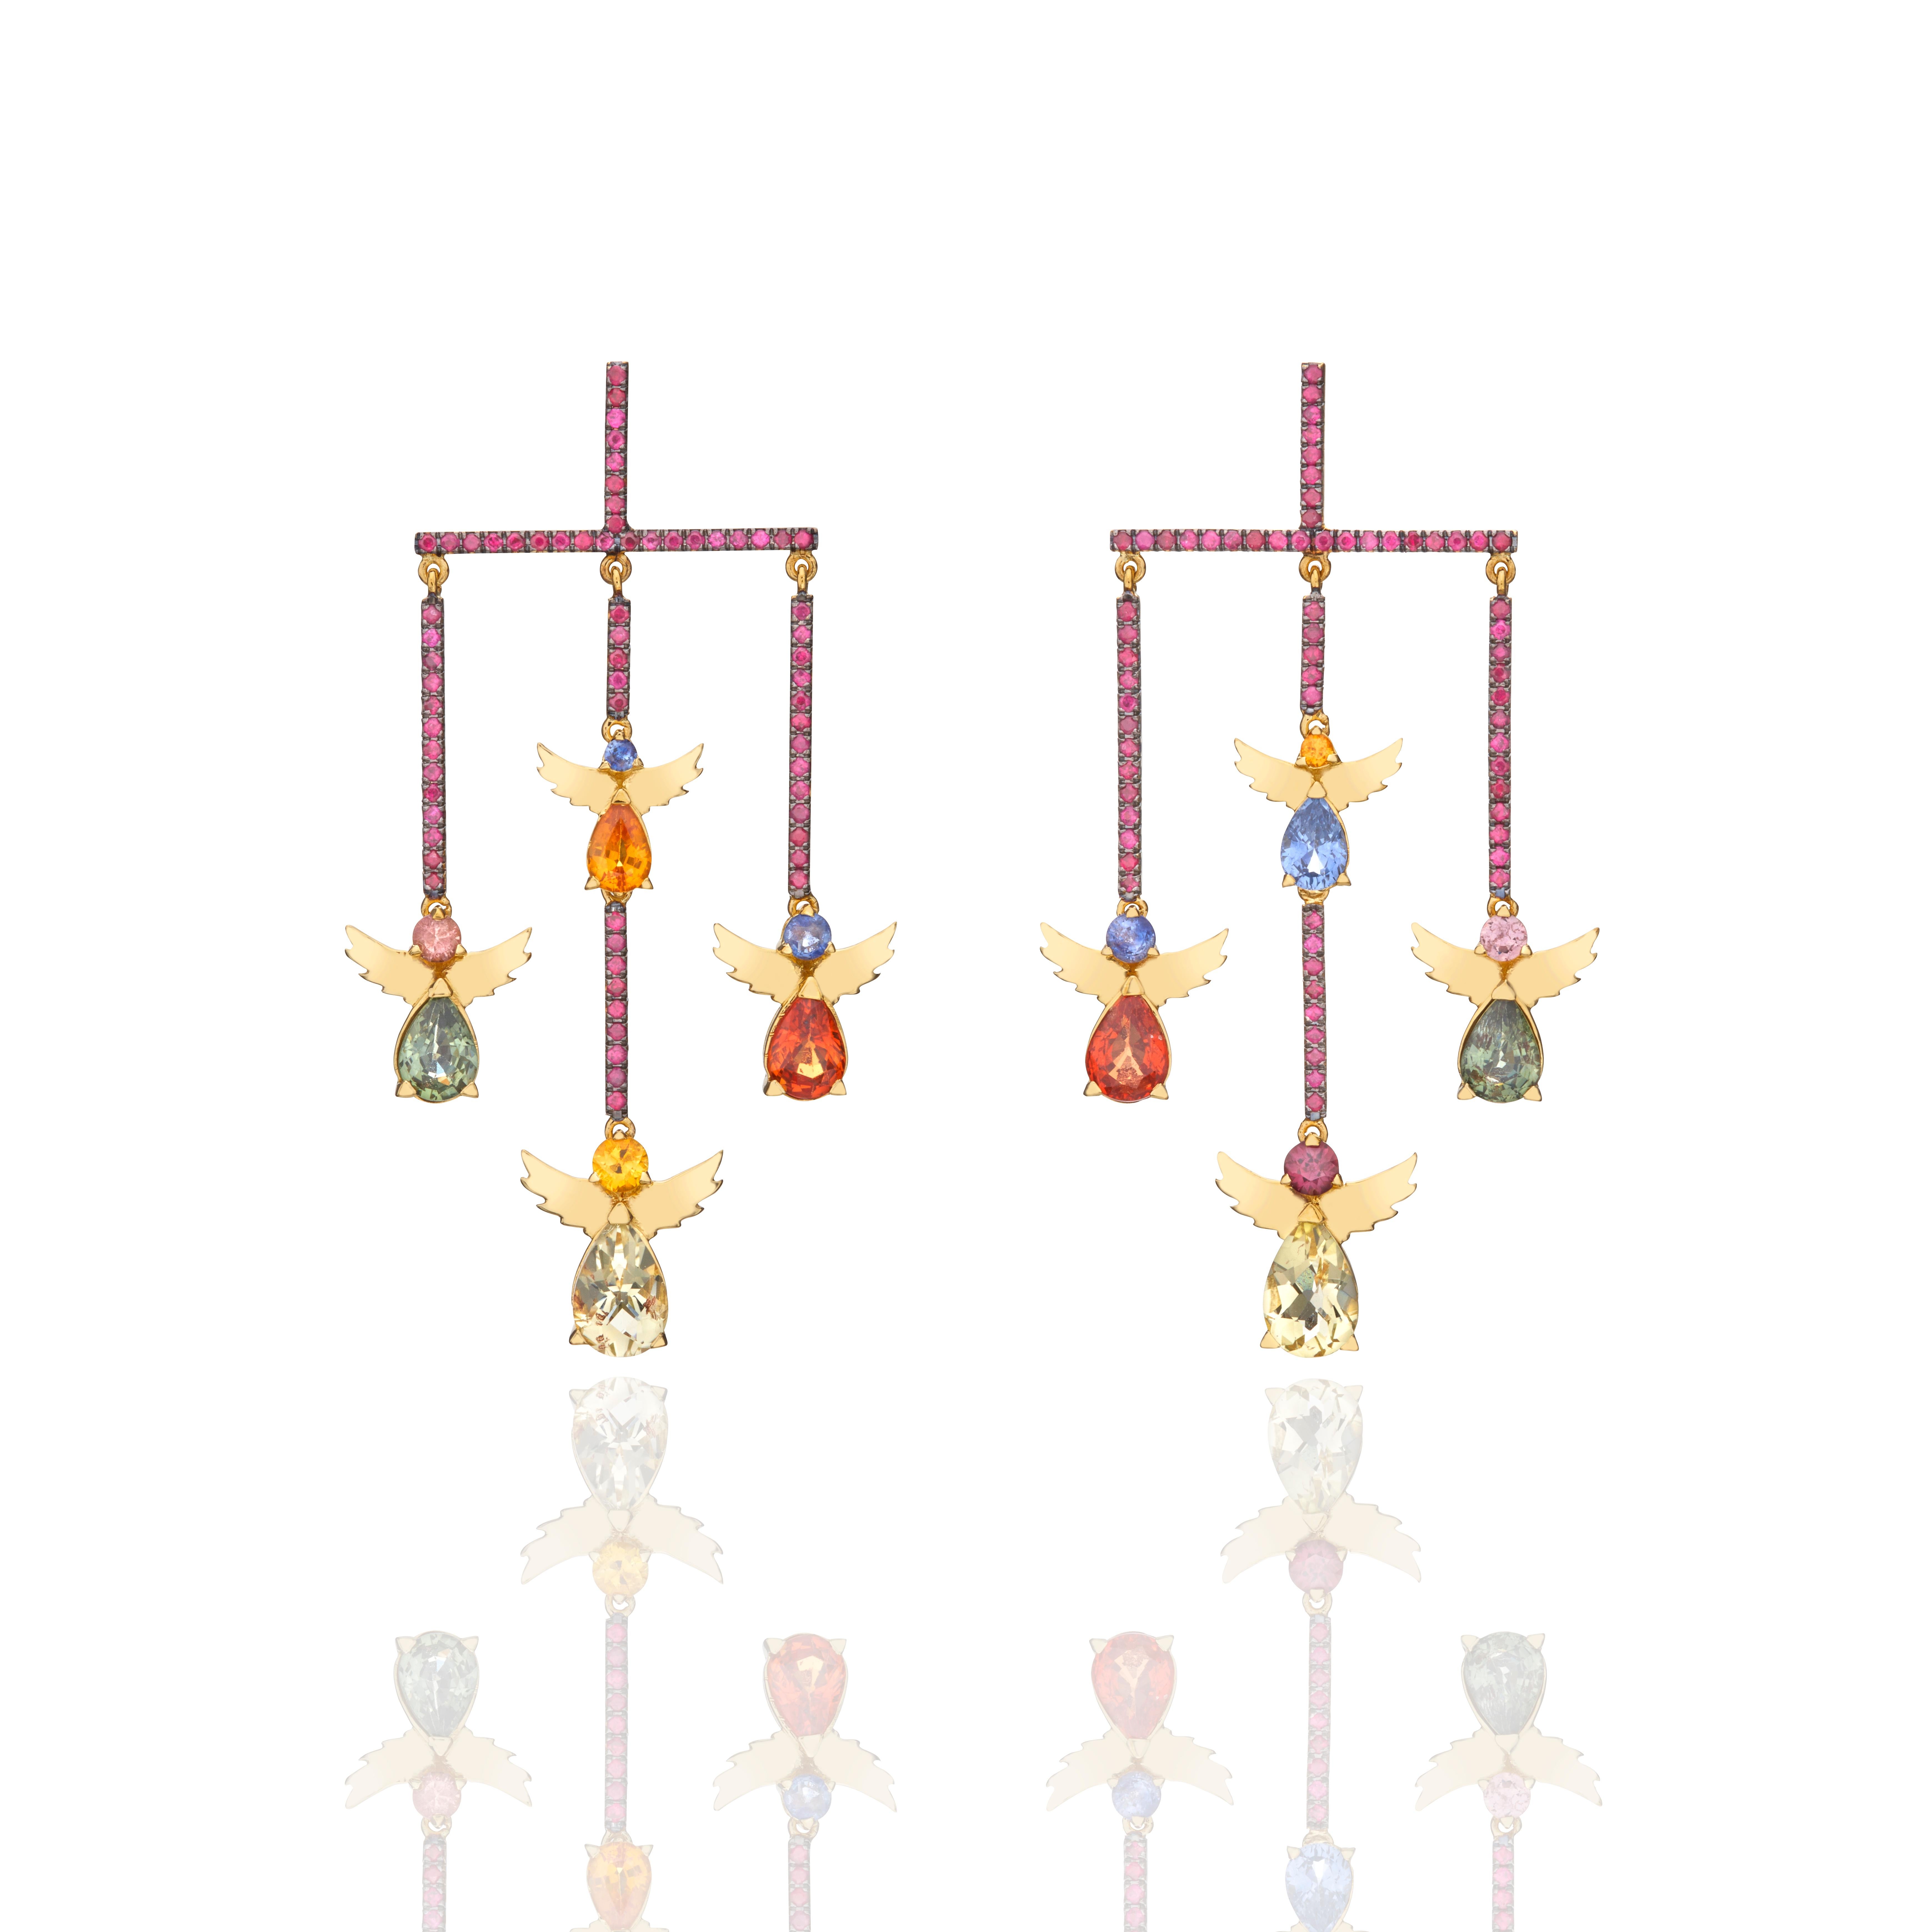 Moderne Chandelier-Ohrringe aus 18-karätigem Gelbgold, besetzt mit Rubinen, Zitronenzitrinen und farbigen Saphiren. 
Ein weiteres einzigartiges Design aus der Angels Collection.
Die Falling Angels Ohrringe stammen von der Marke Nicofilimon, einer